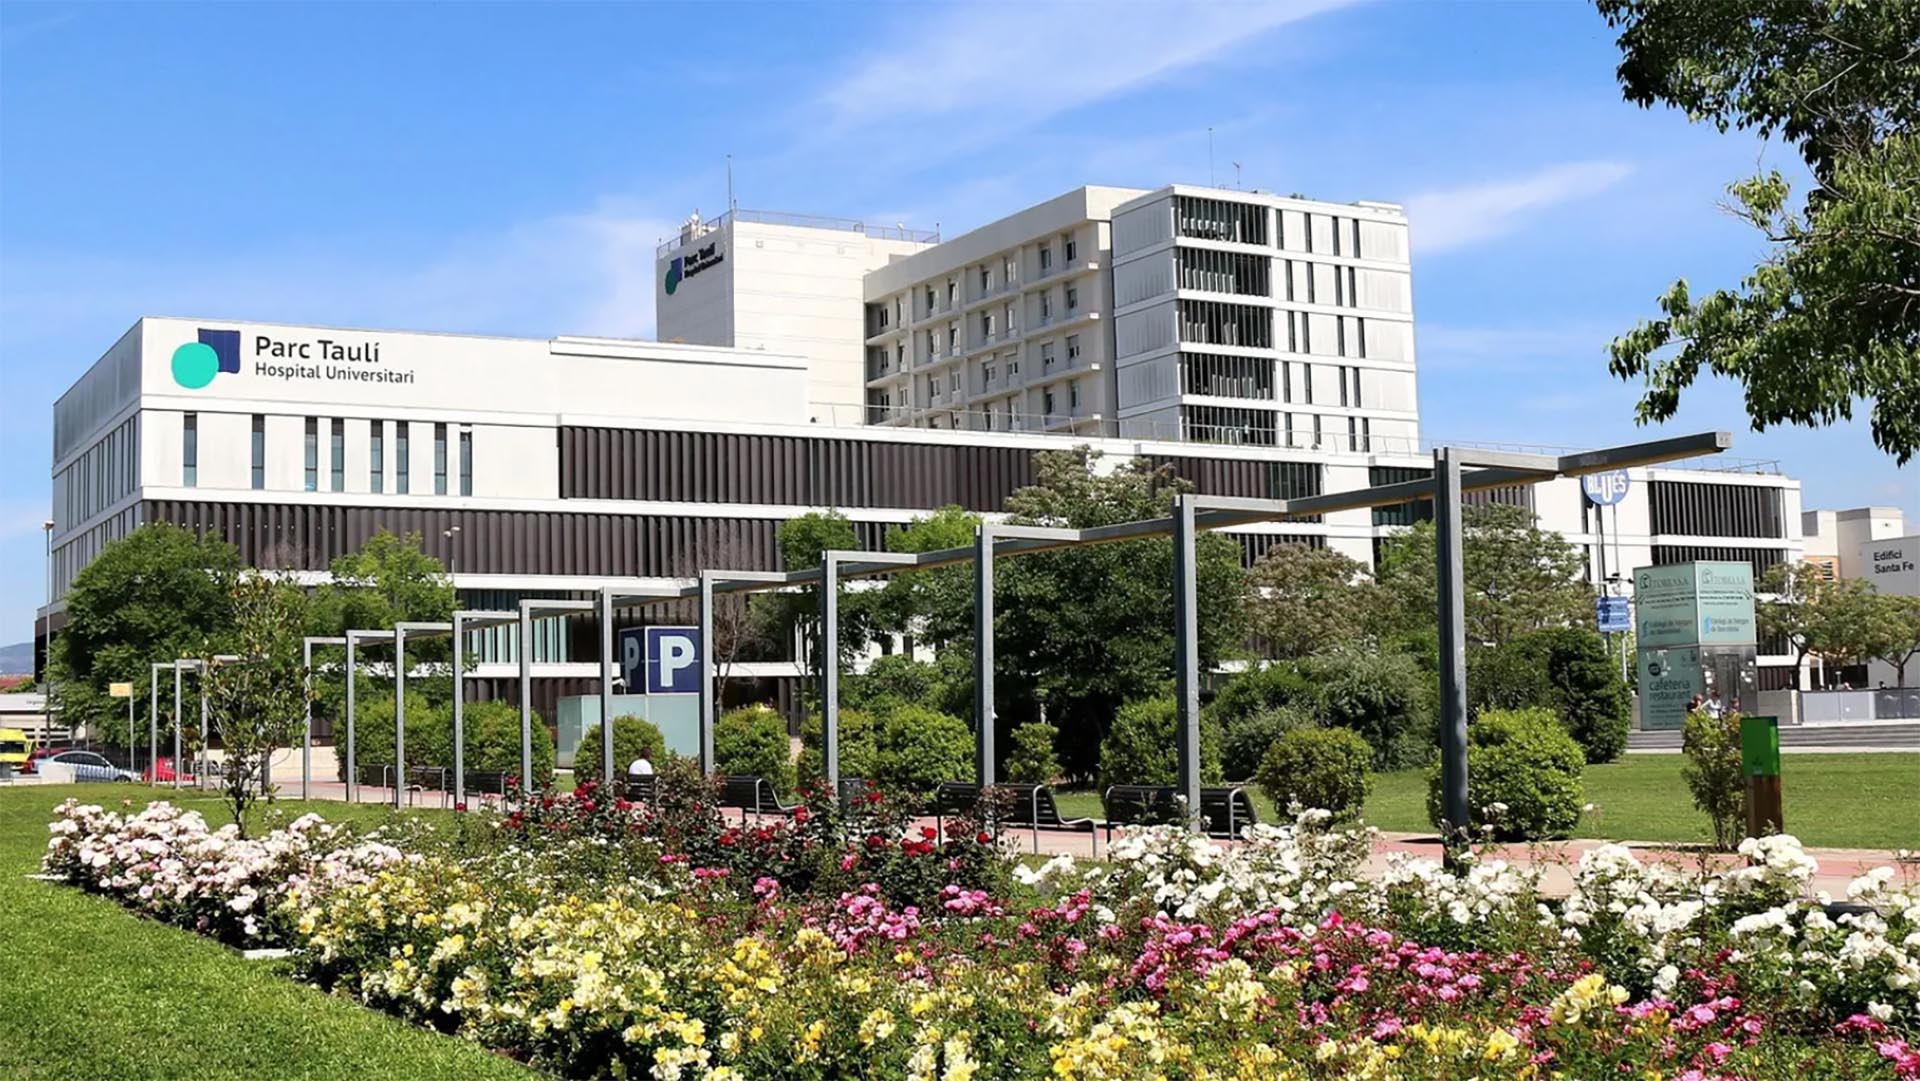 El hospital Parc Taulí de Sabadell, lugar de internación de la gemela que se encuentra en grave estado